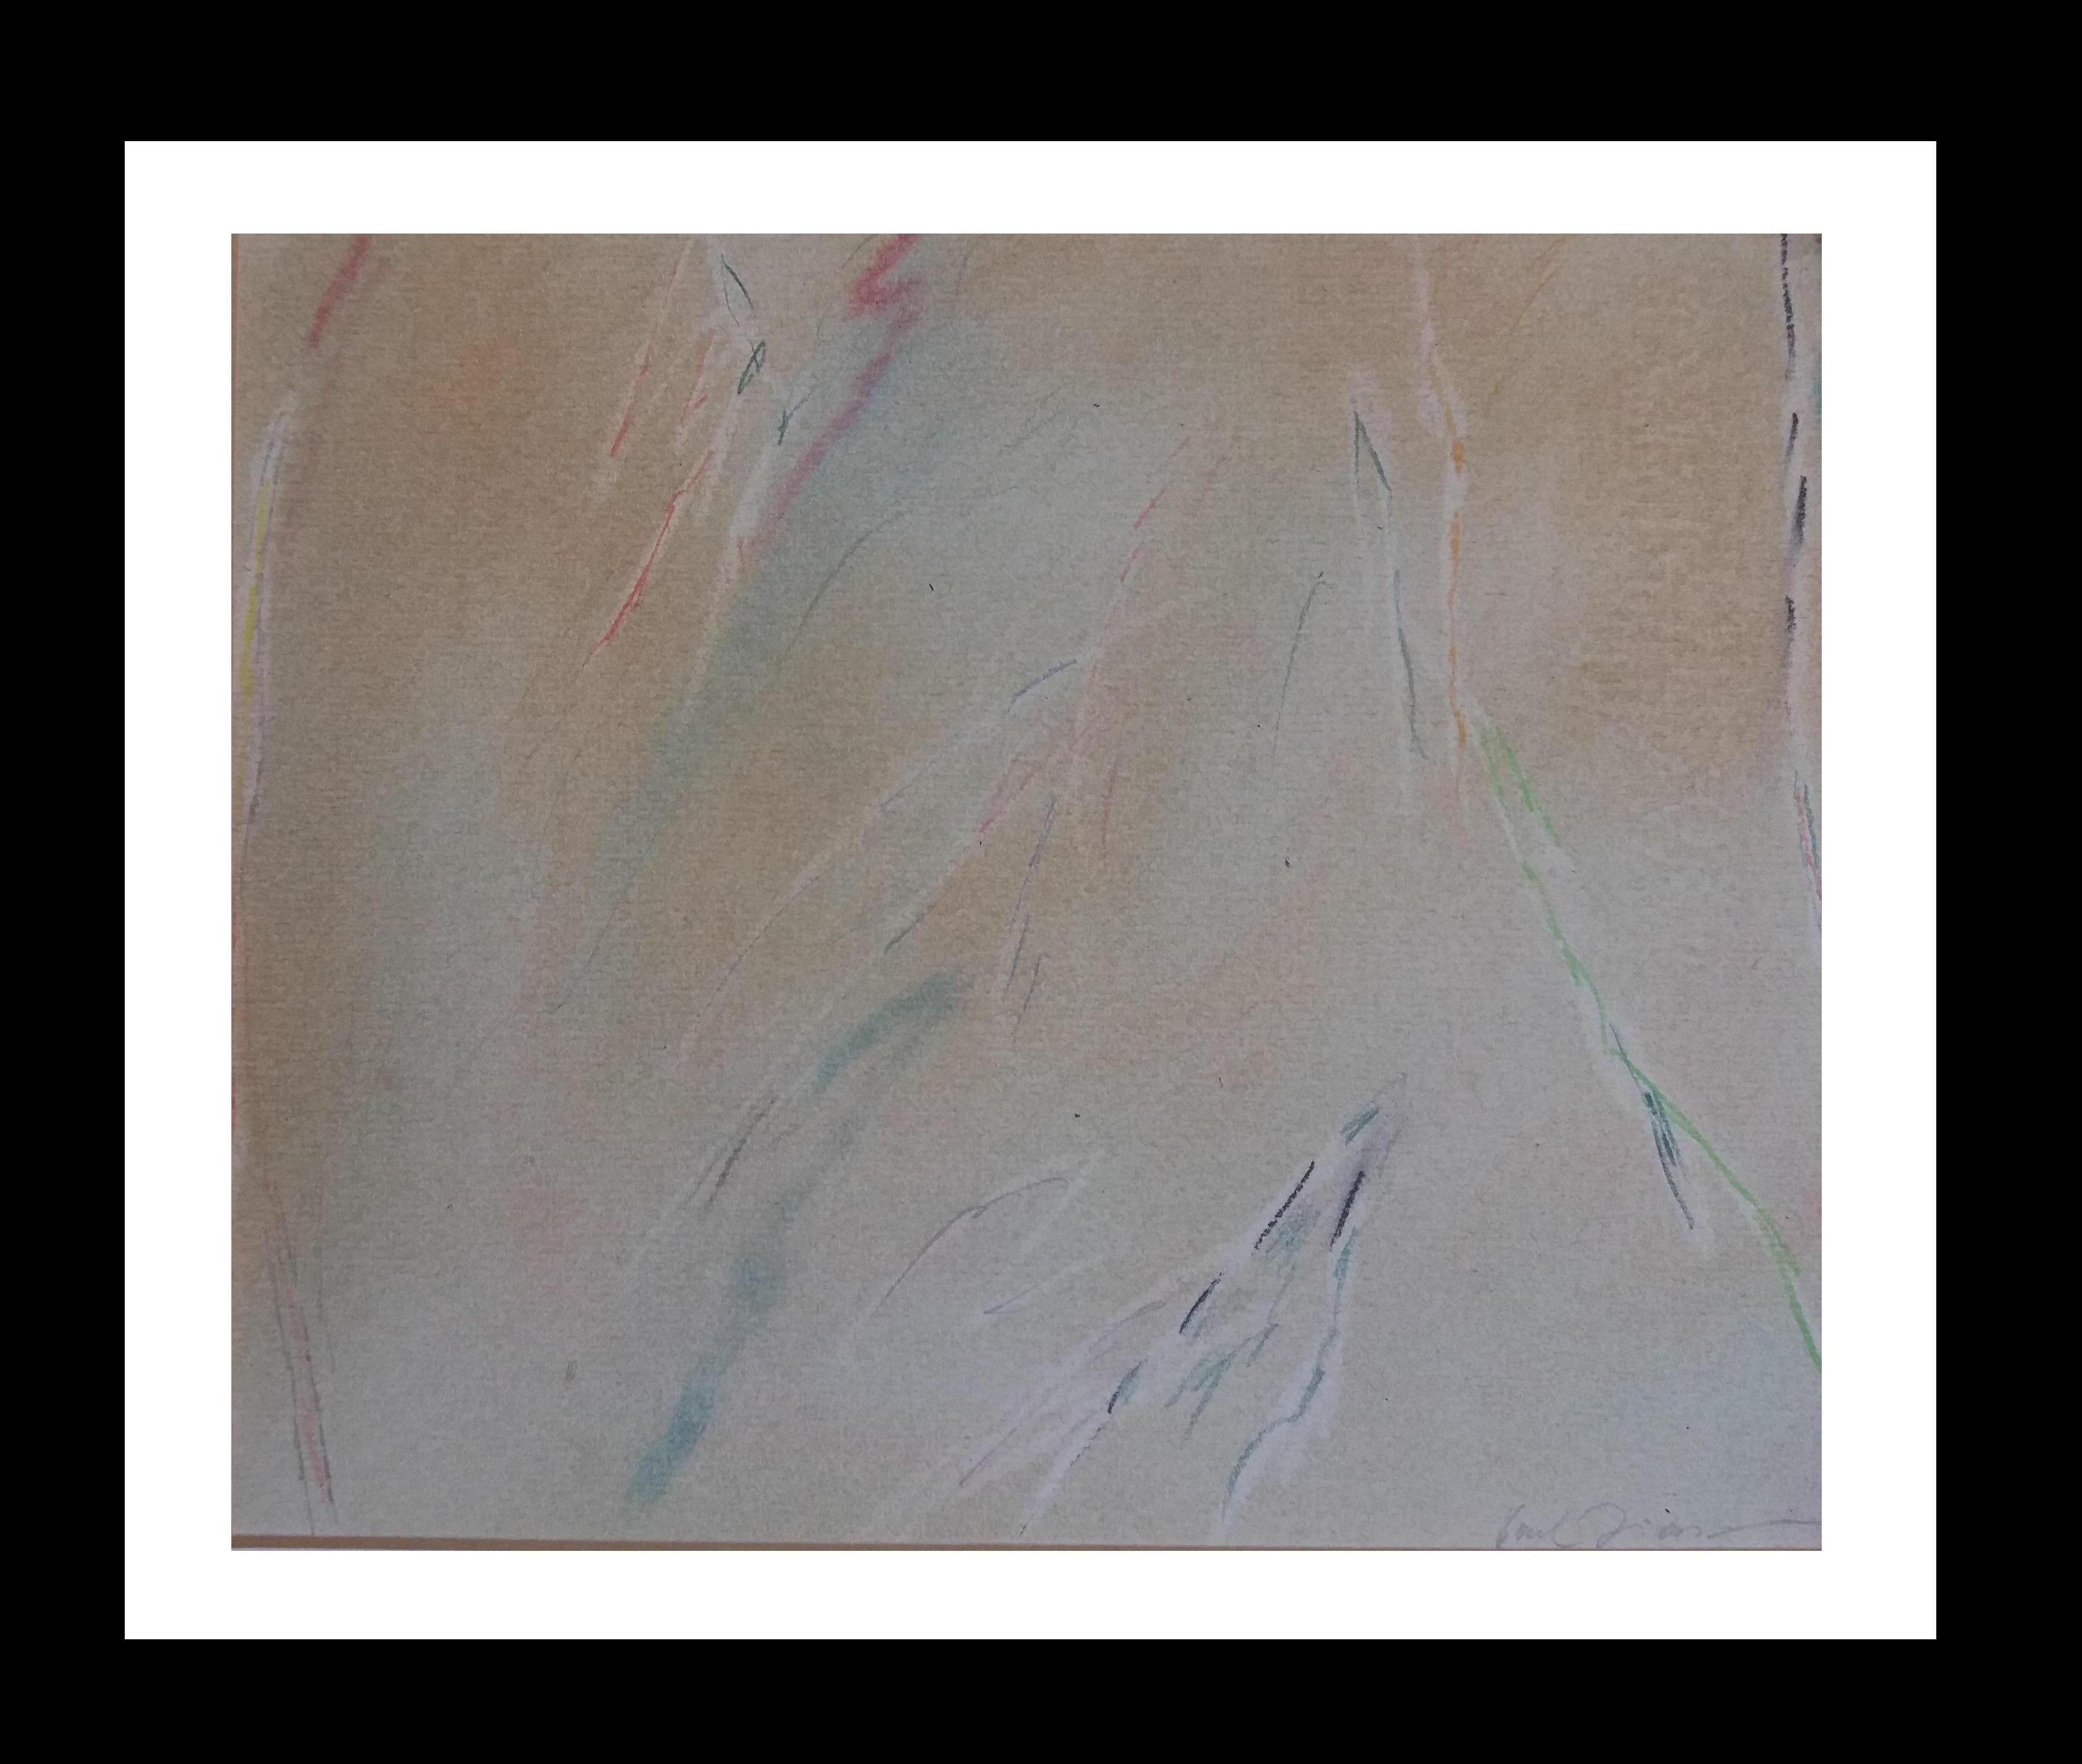 Sin titulo original pastel abstract painting

Manel Font Díaz (Barcelona, 1950) es un artista centrado especialmente en la pintura, primero formado en la facultad de Bellas Artes de la Universidad de Barcelona y luego en la Escuela Massana. A esta